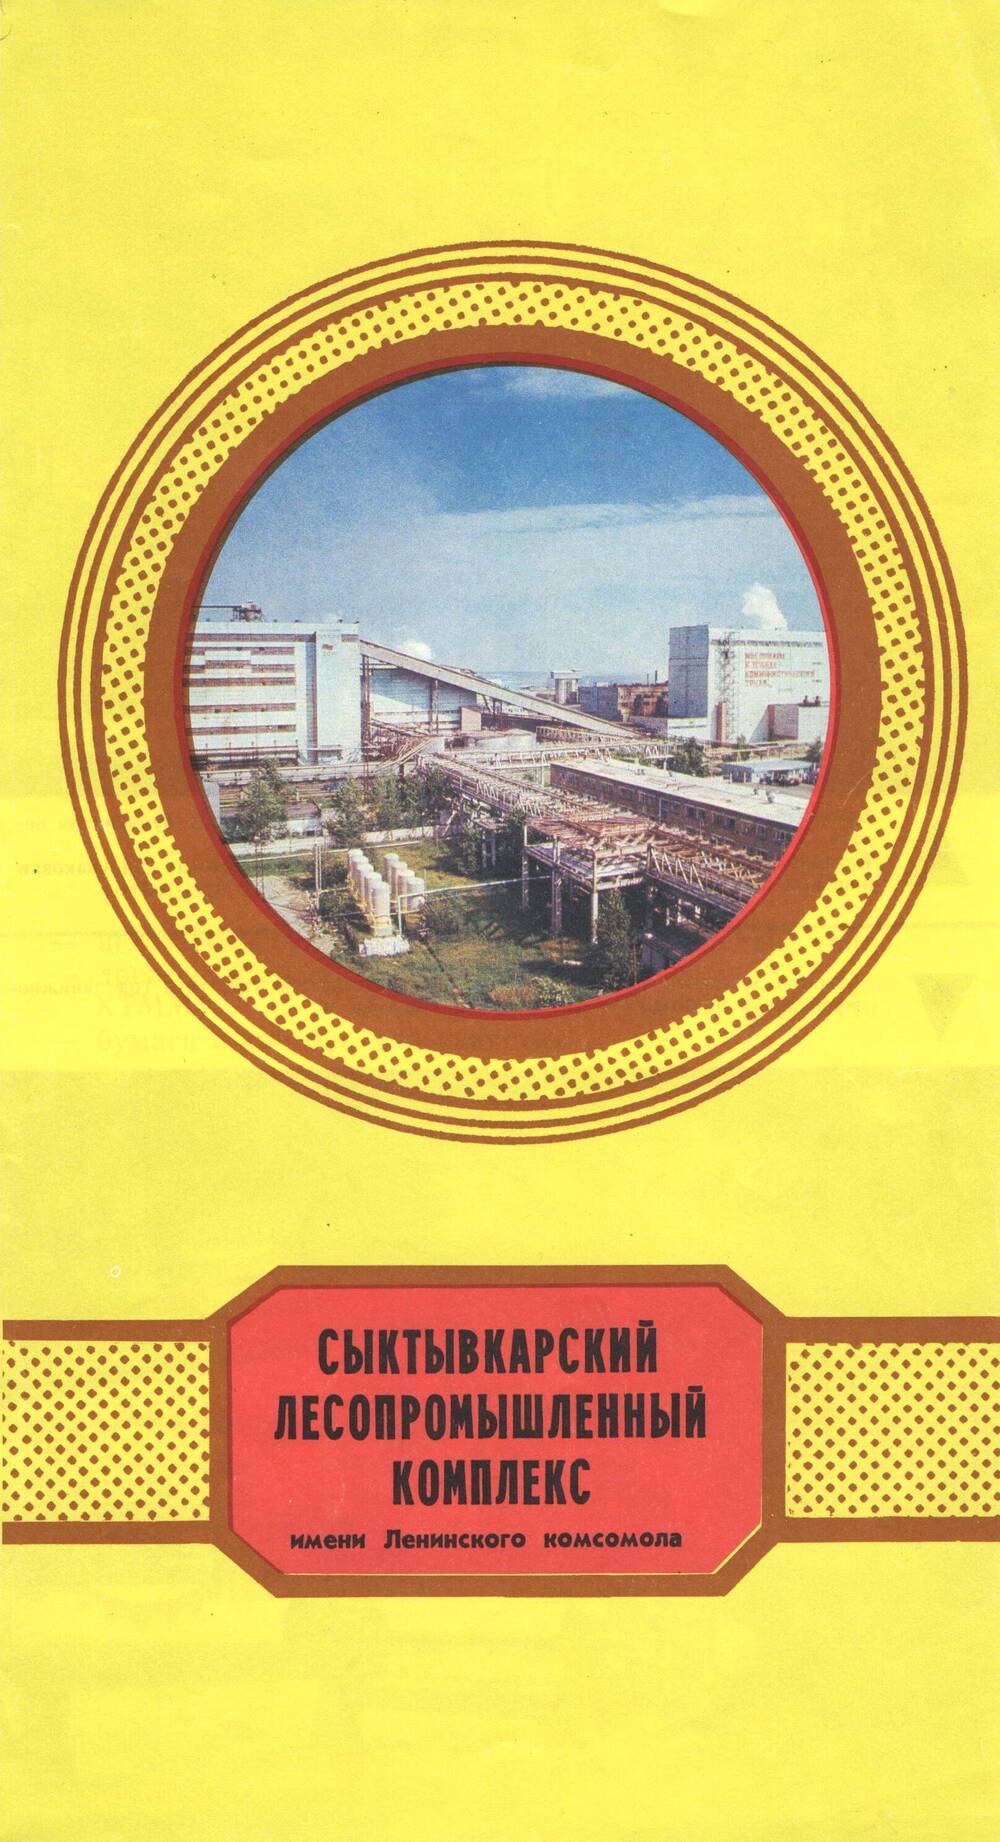 Буклет Сыктывкарский лесопромышленный комплекс имени Ленинского комсомола